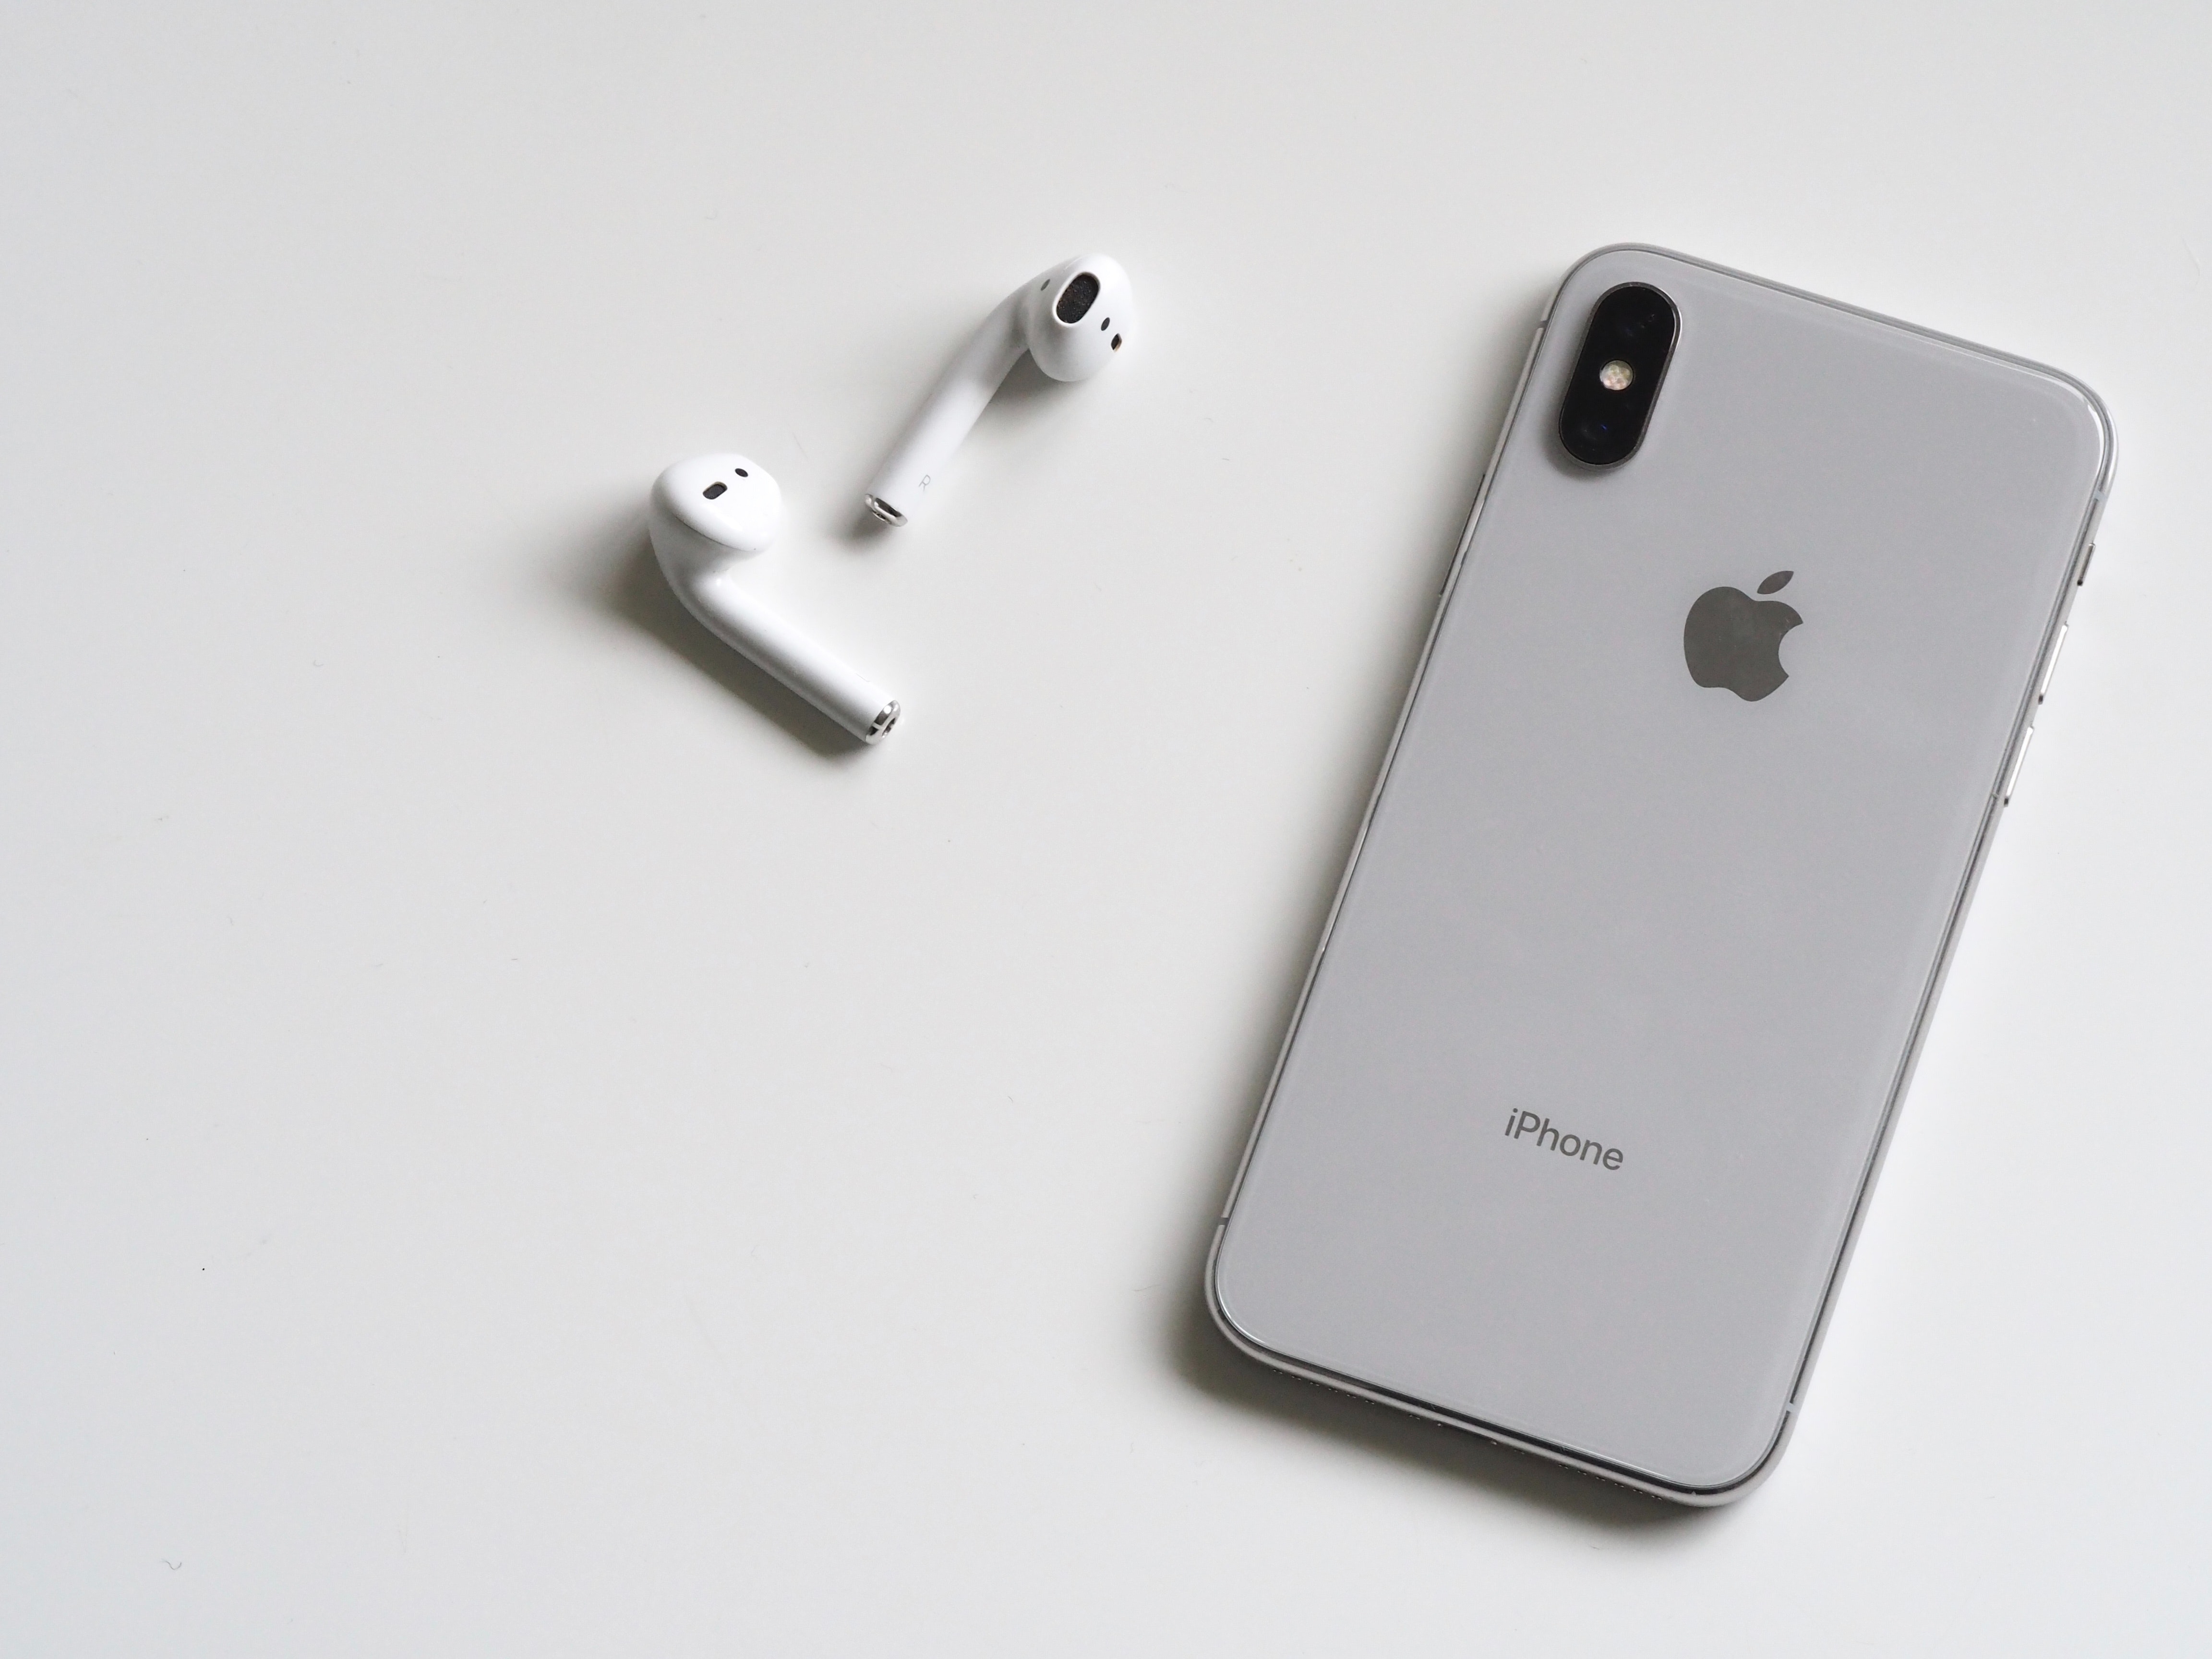 Découvrez les meilleurs iPhone en 2021 - Photo de Jess Bailey Designs provenant de Pexels